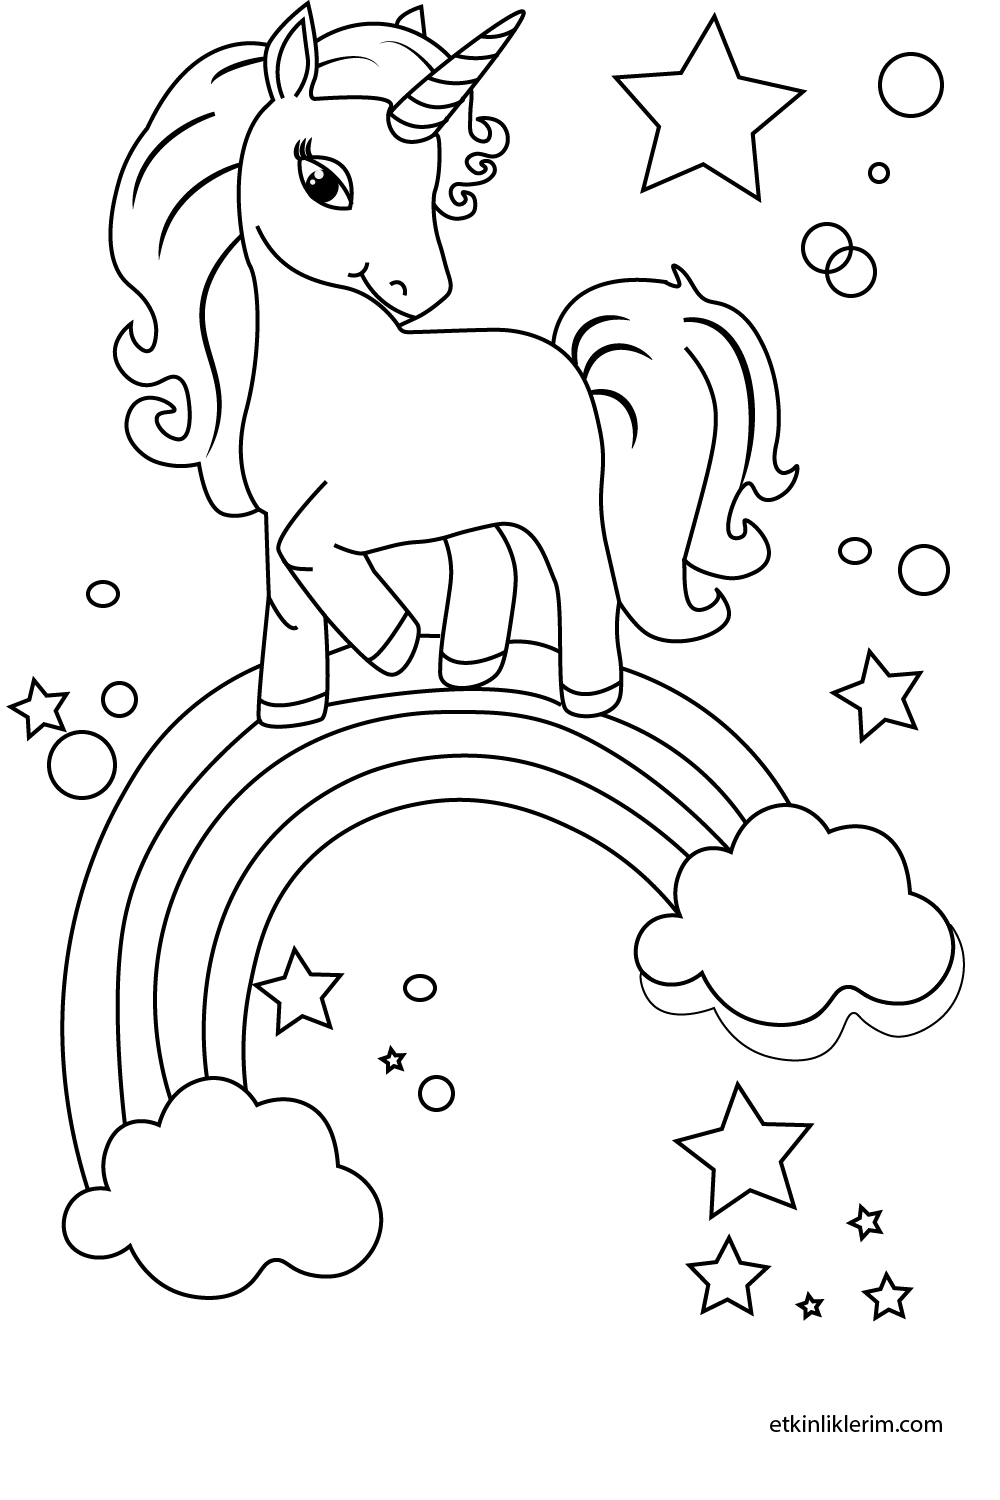 okul öncesi ilk hafta unicorn resmi boyama sayfası